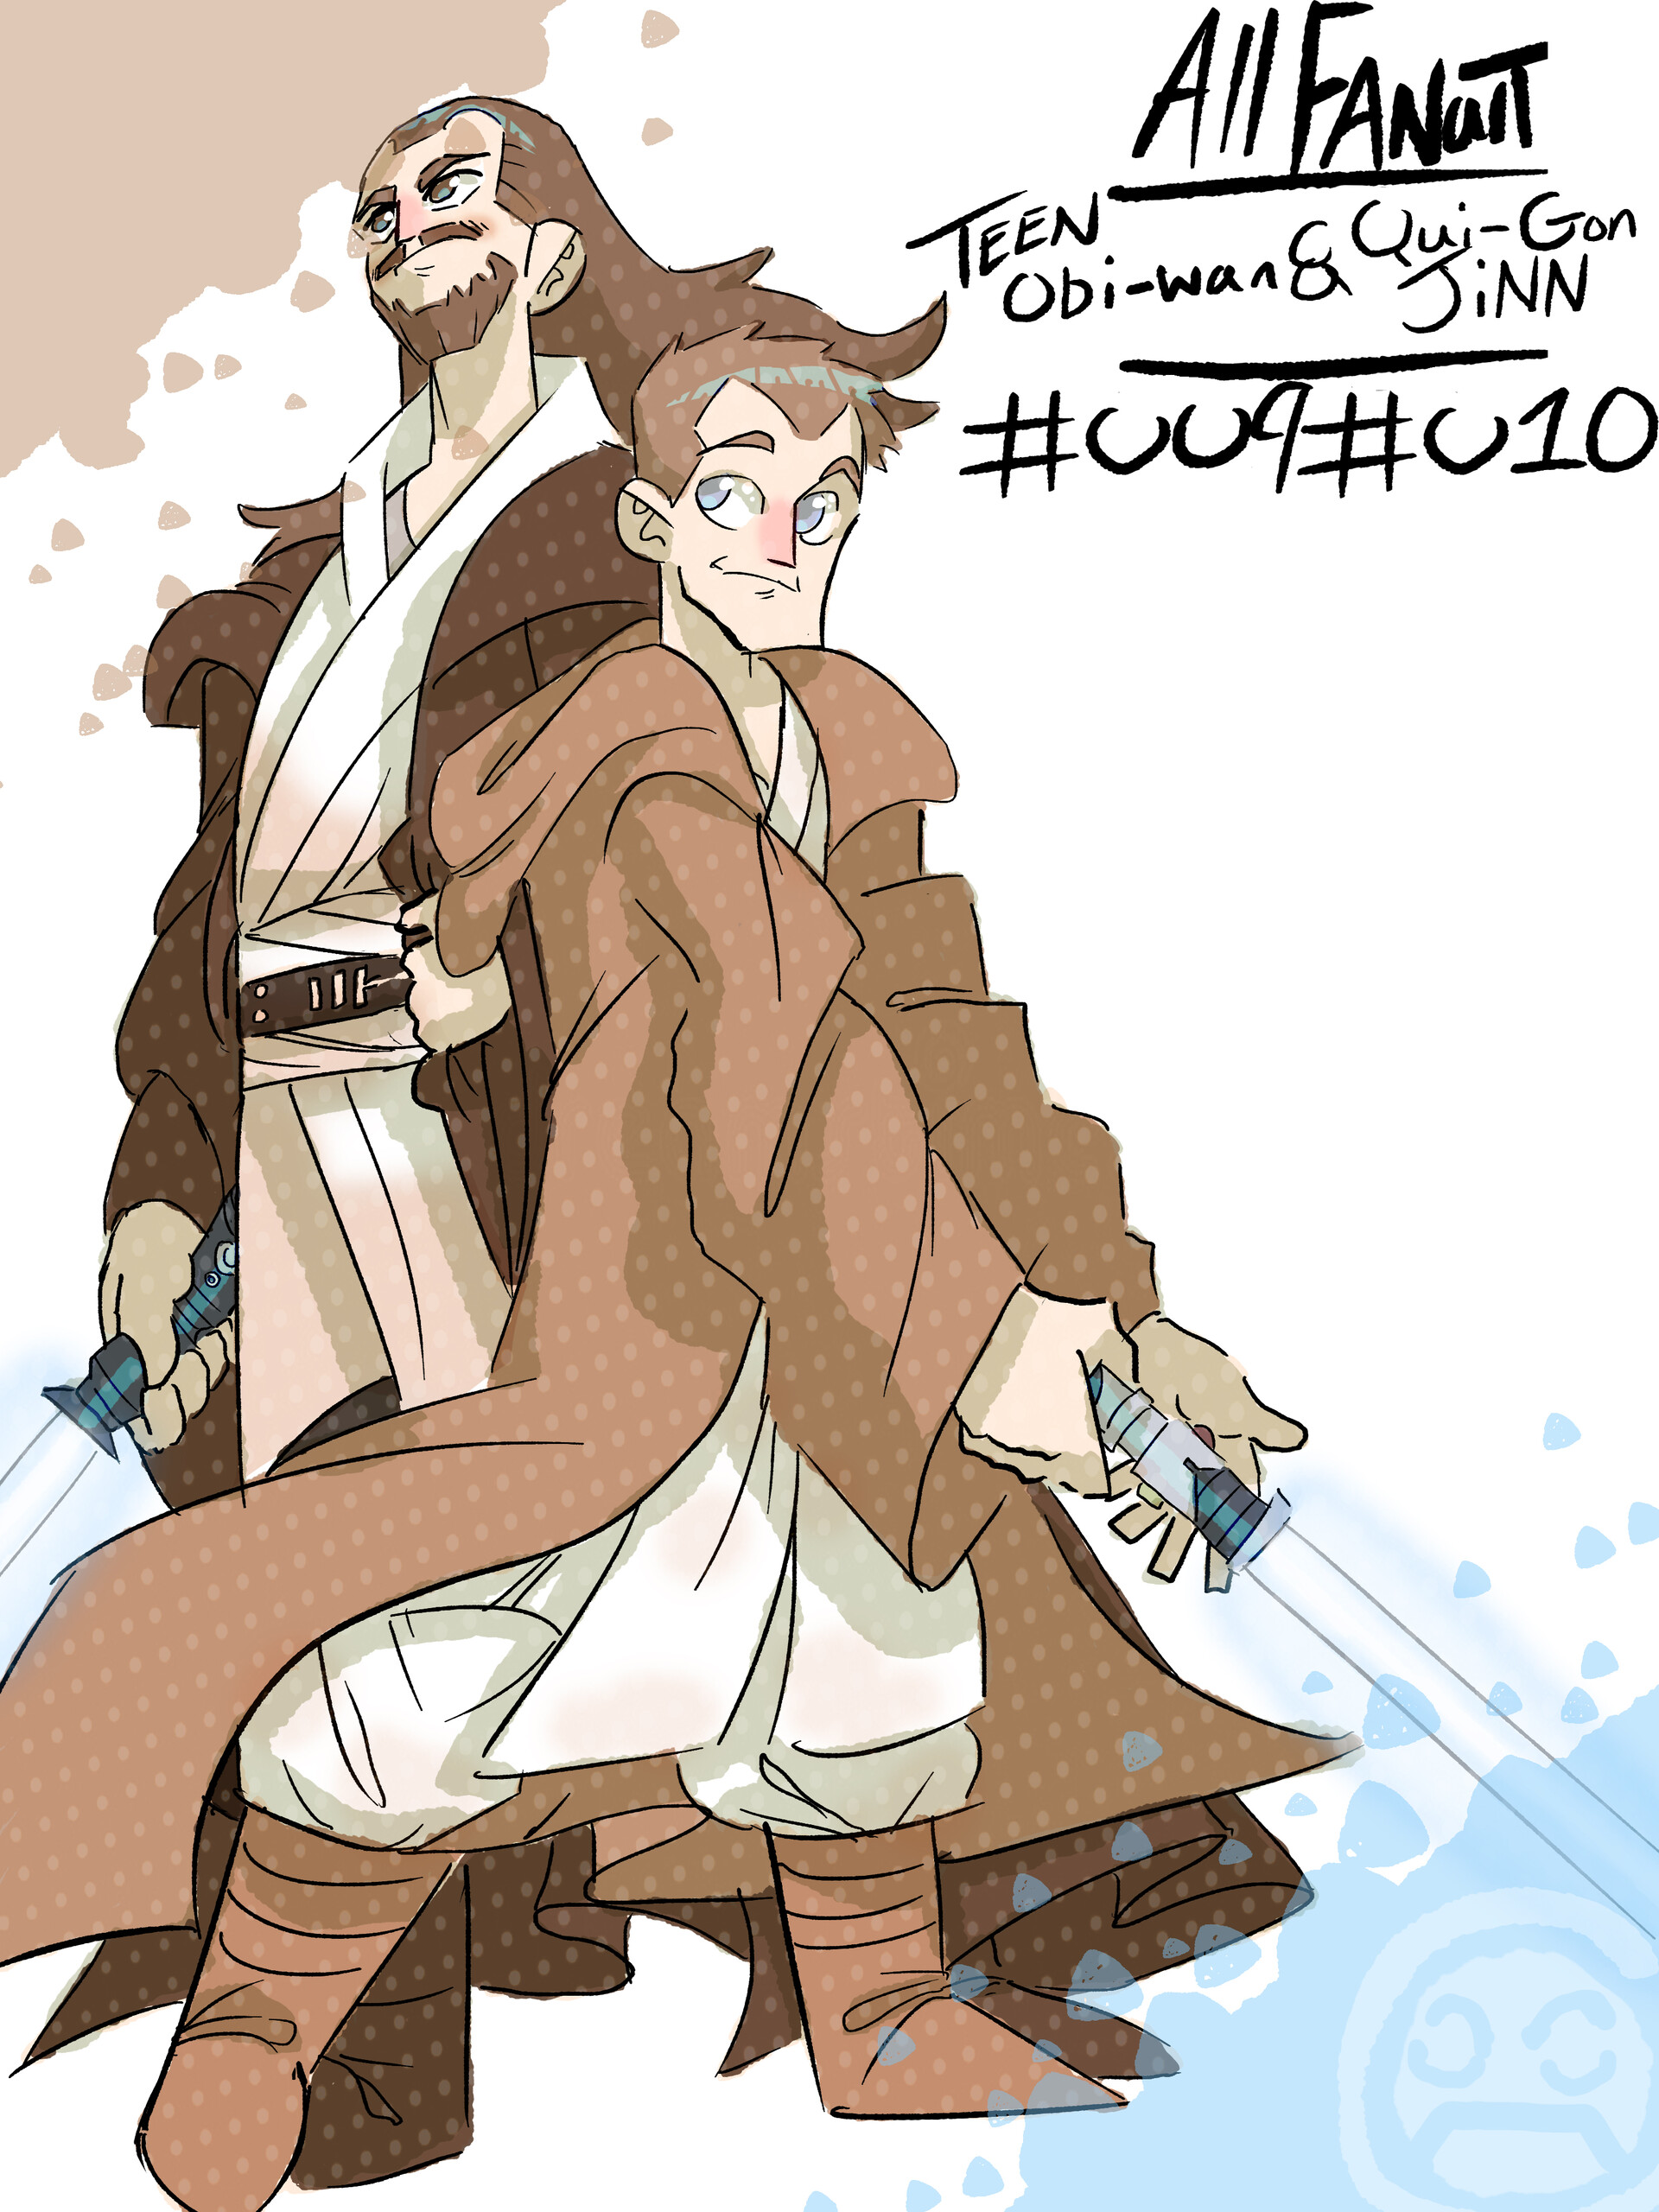 Star Wars fan art - Qui Gon Jinn & Obi Wan Kenobi - Wattpad